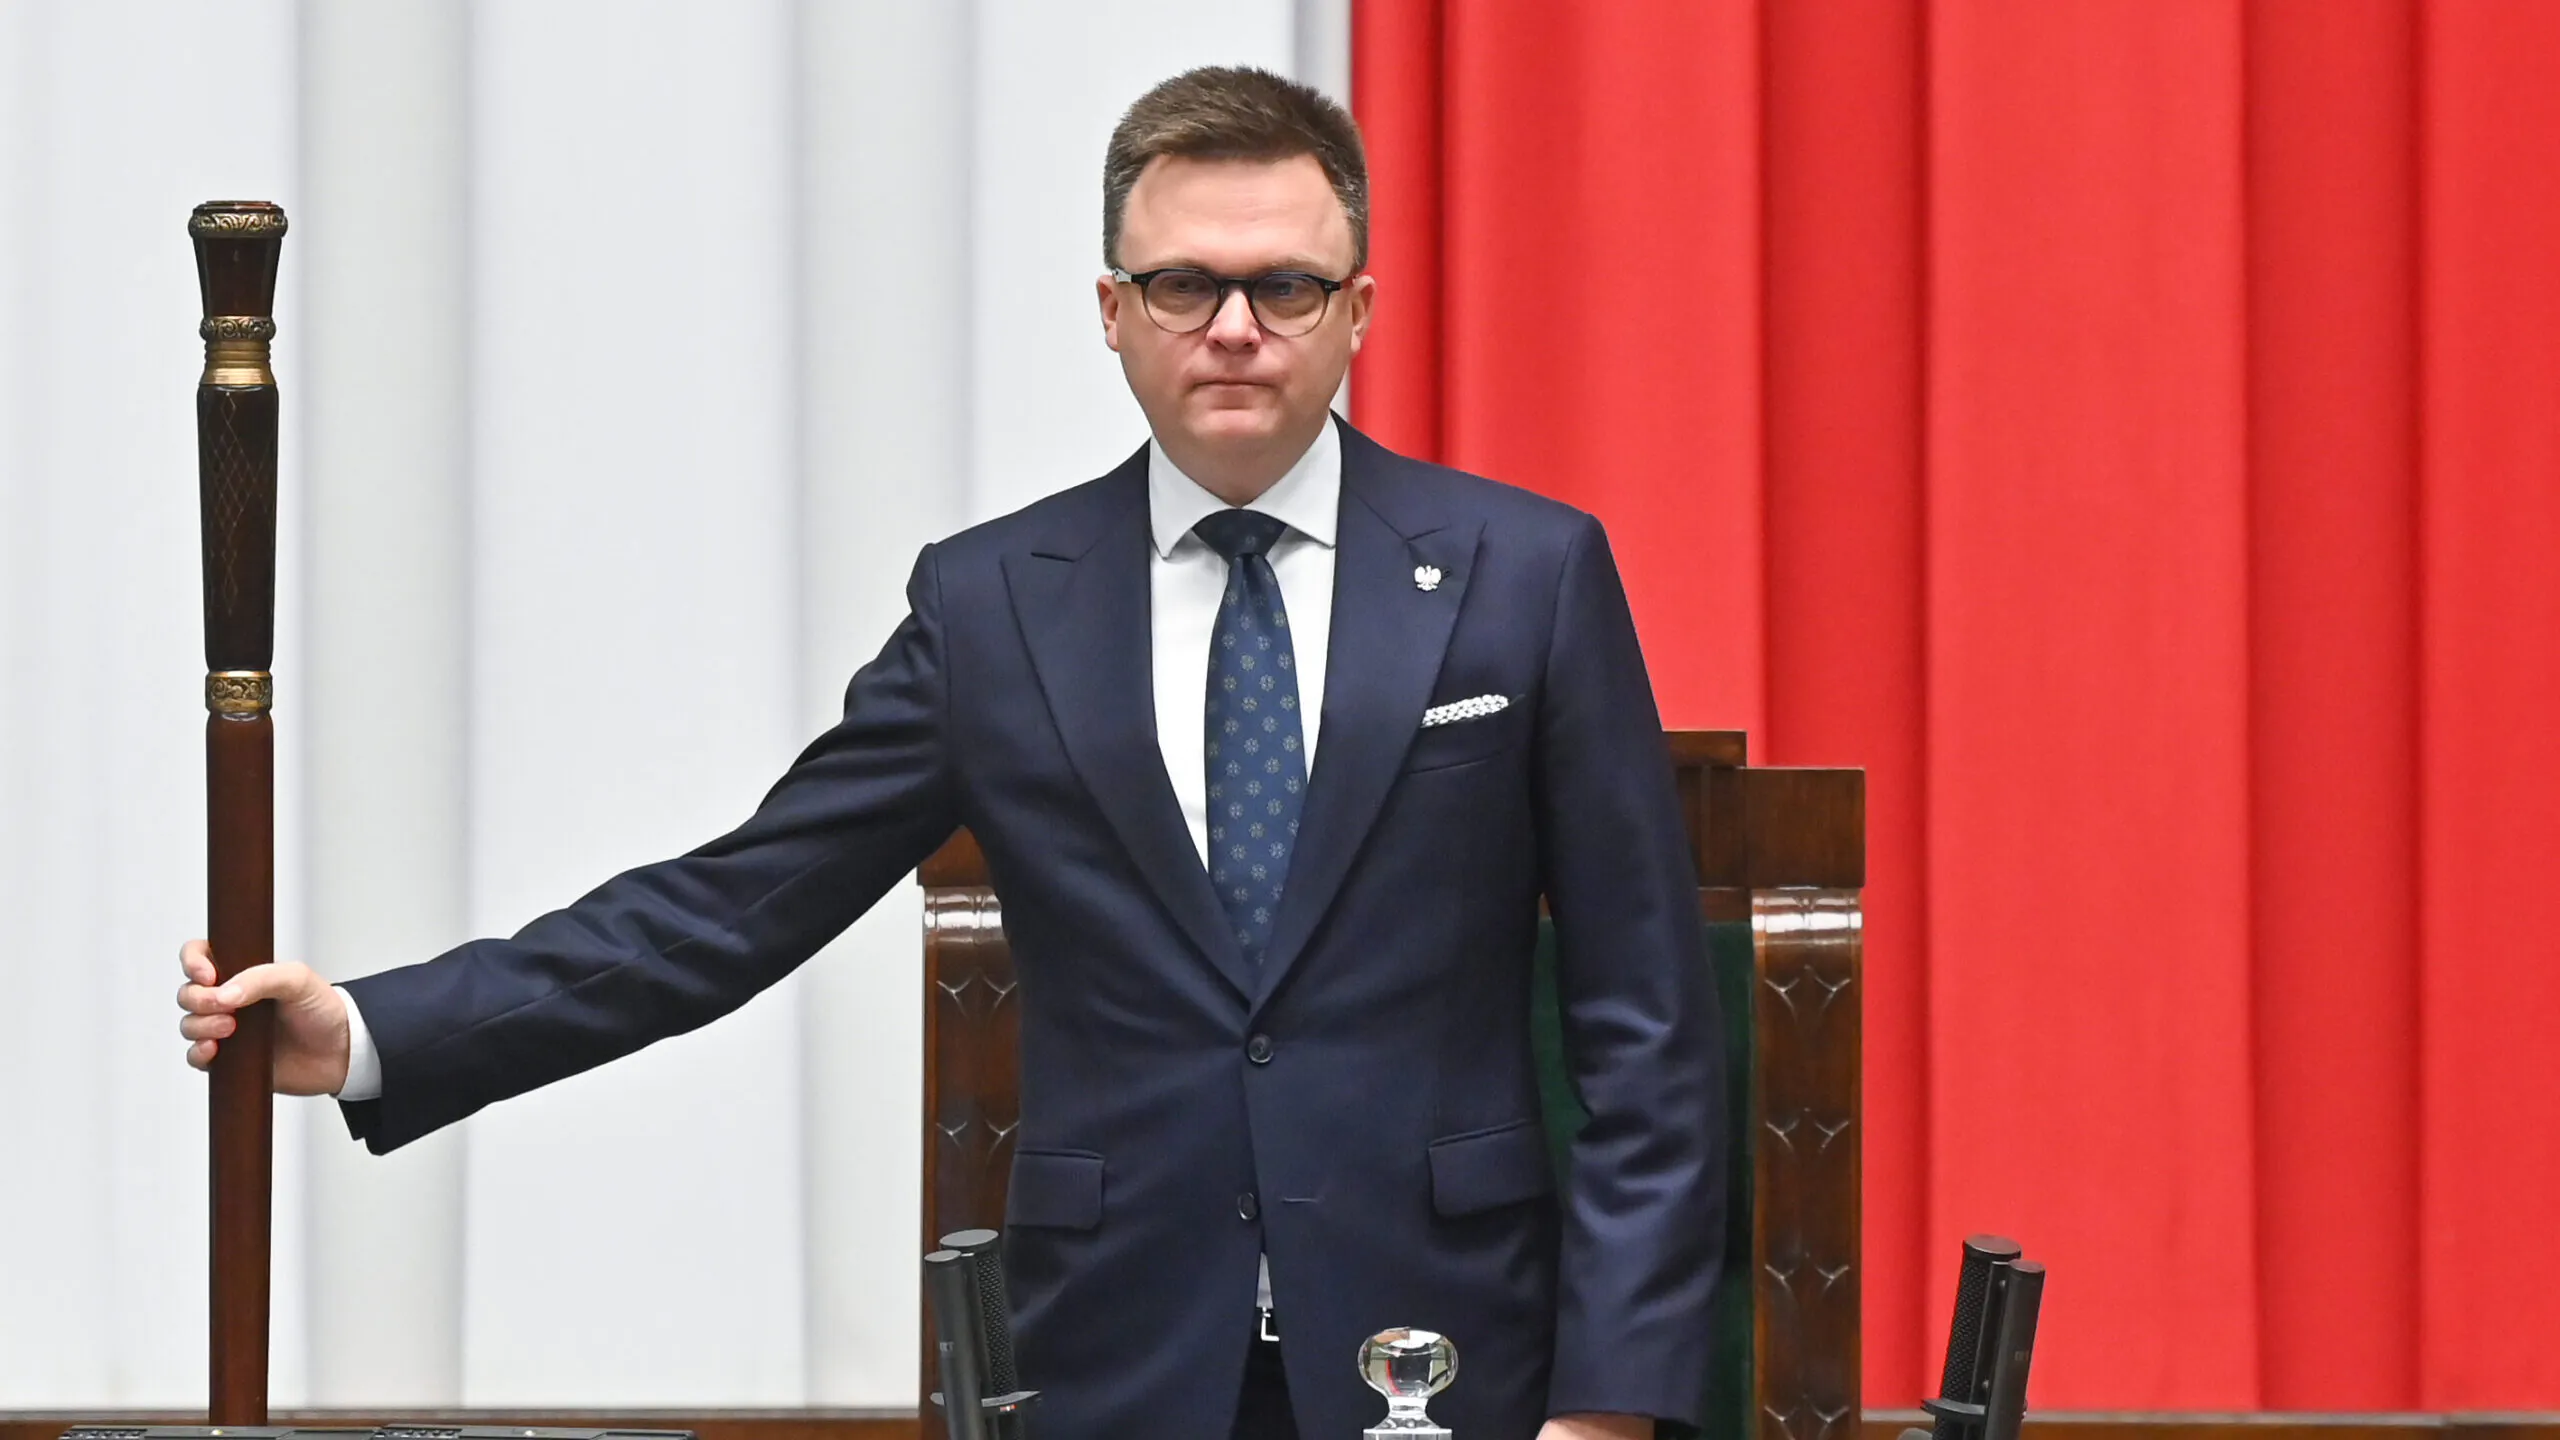 Dziś marszałek Sejmu, jutro prezydent Białegostoku?